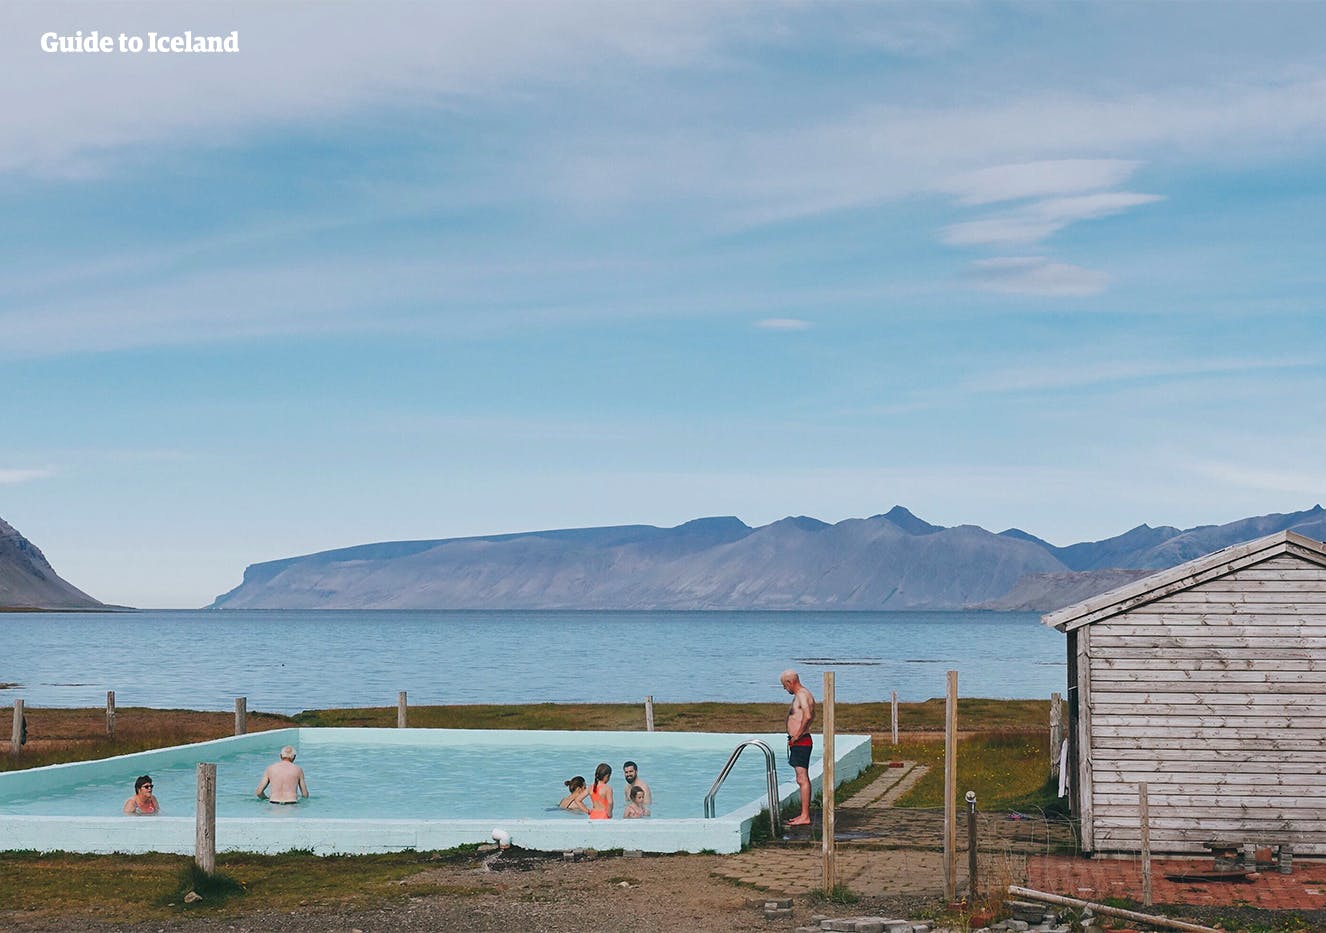 Het geothermische zwembad van Reykjafardarlaug kun je vinden in de afgelegen Westfjorden van IJsland.